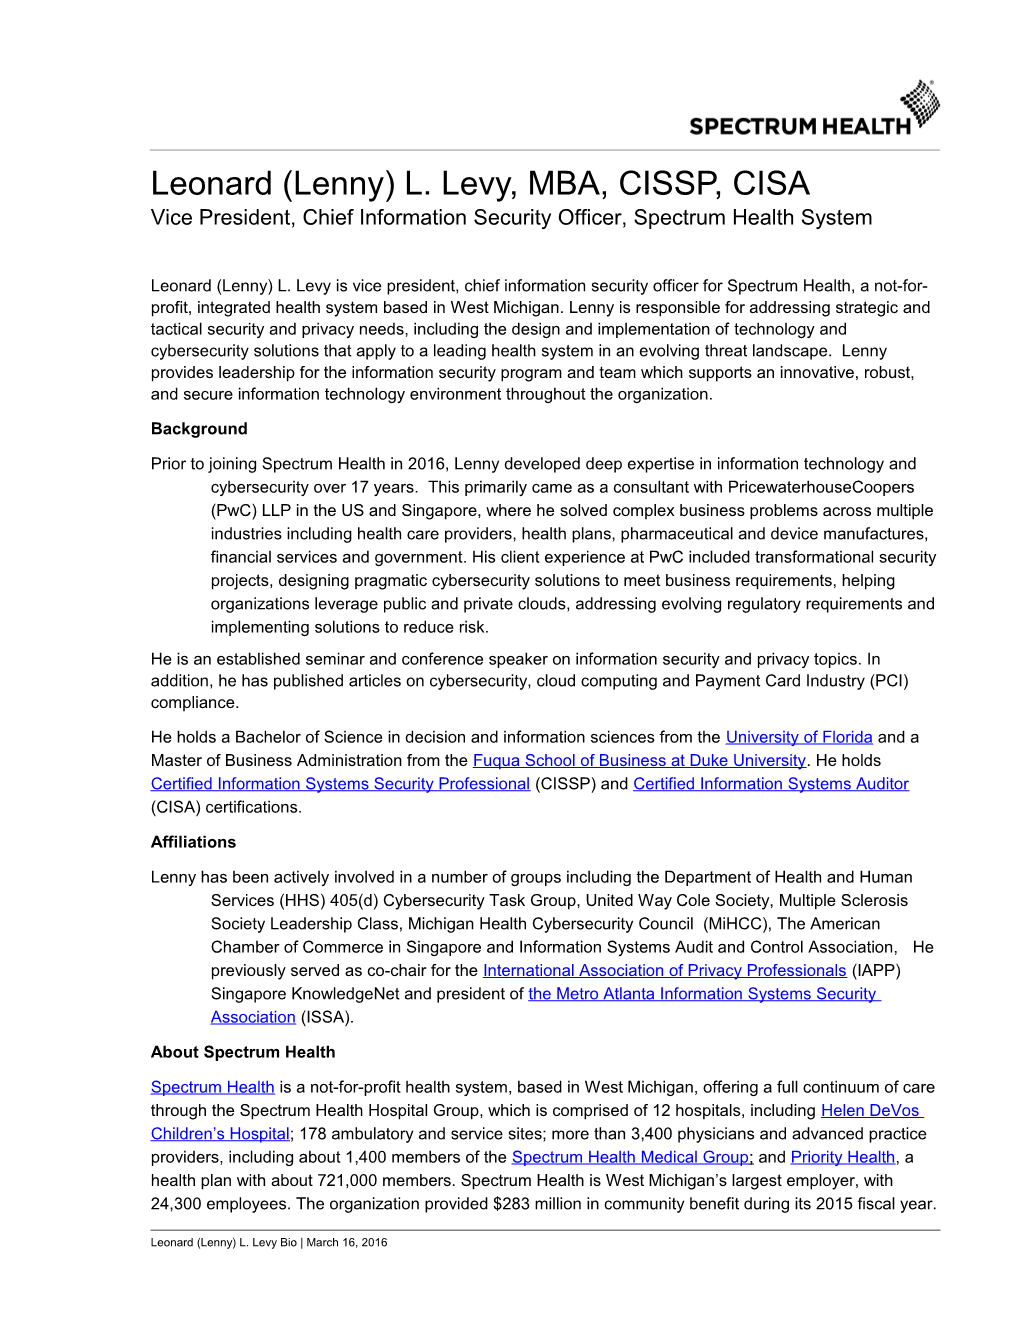 Leonard (Lenny) L. Levy, MBA, CISSP, CISA